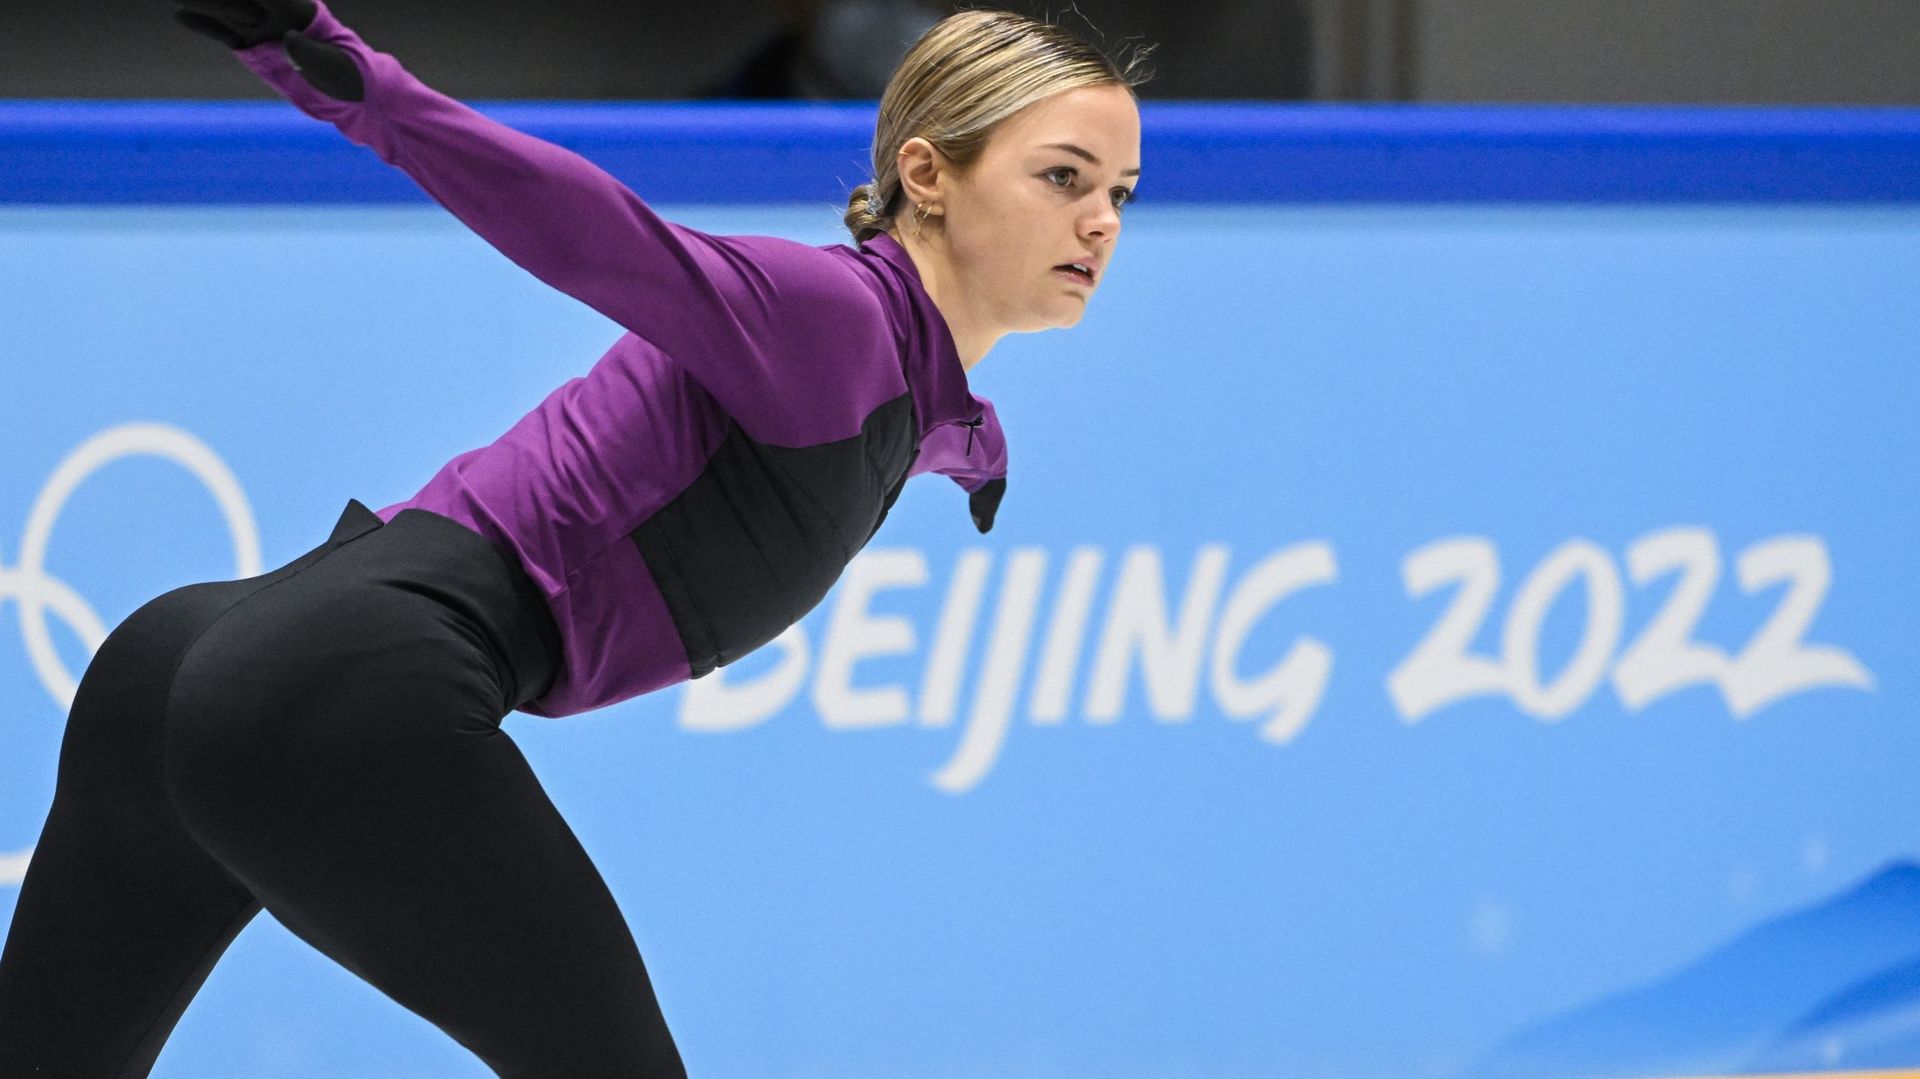 La patineuse belge Loena Hendrickx se prépare avant son entrée en lice, mardi, aux Jeux olympiques d’hiver de Pékin.
